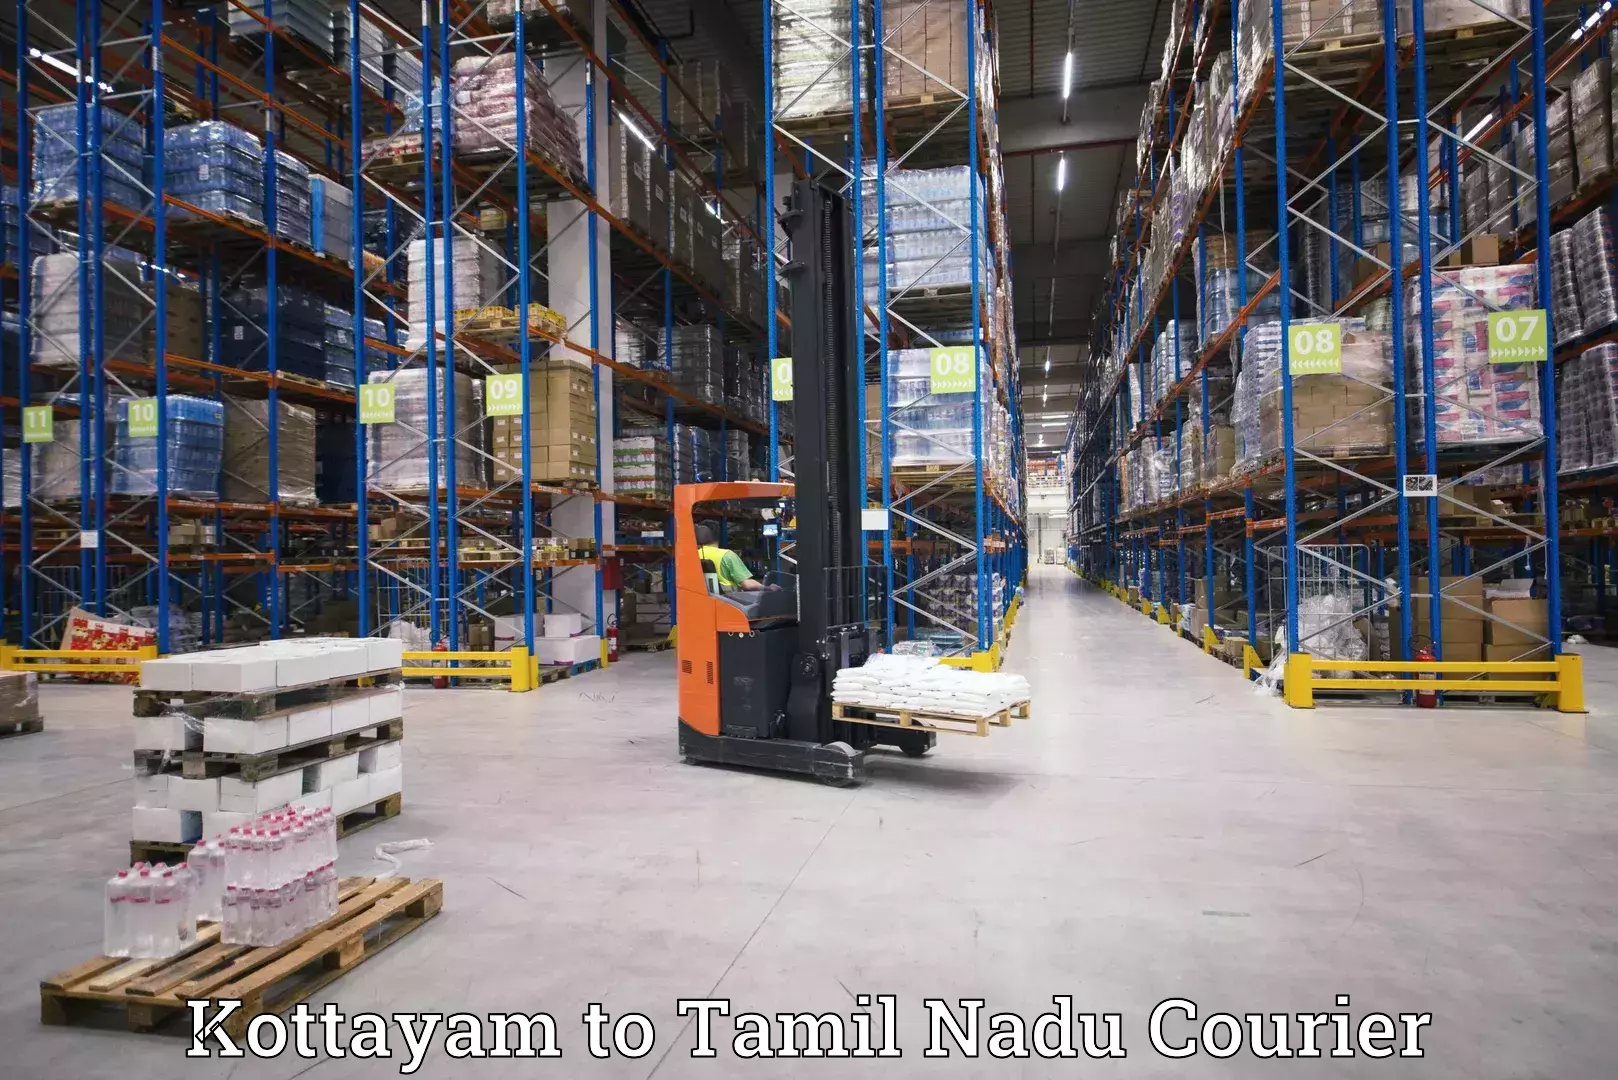 Courier service efficiency in Kottayam to Devakottai